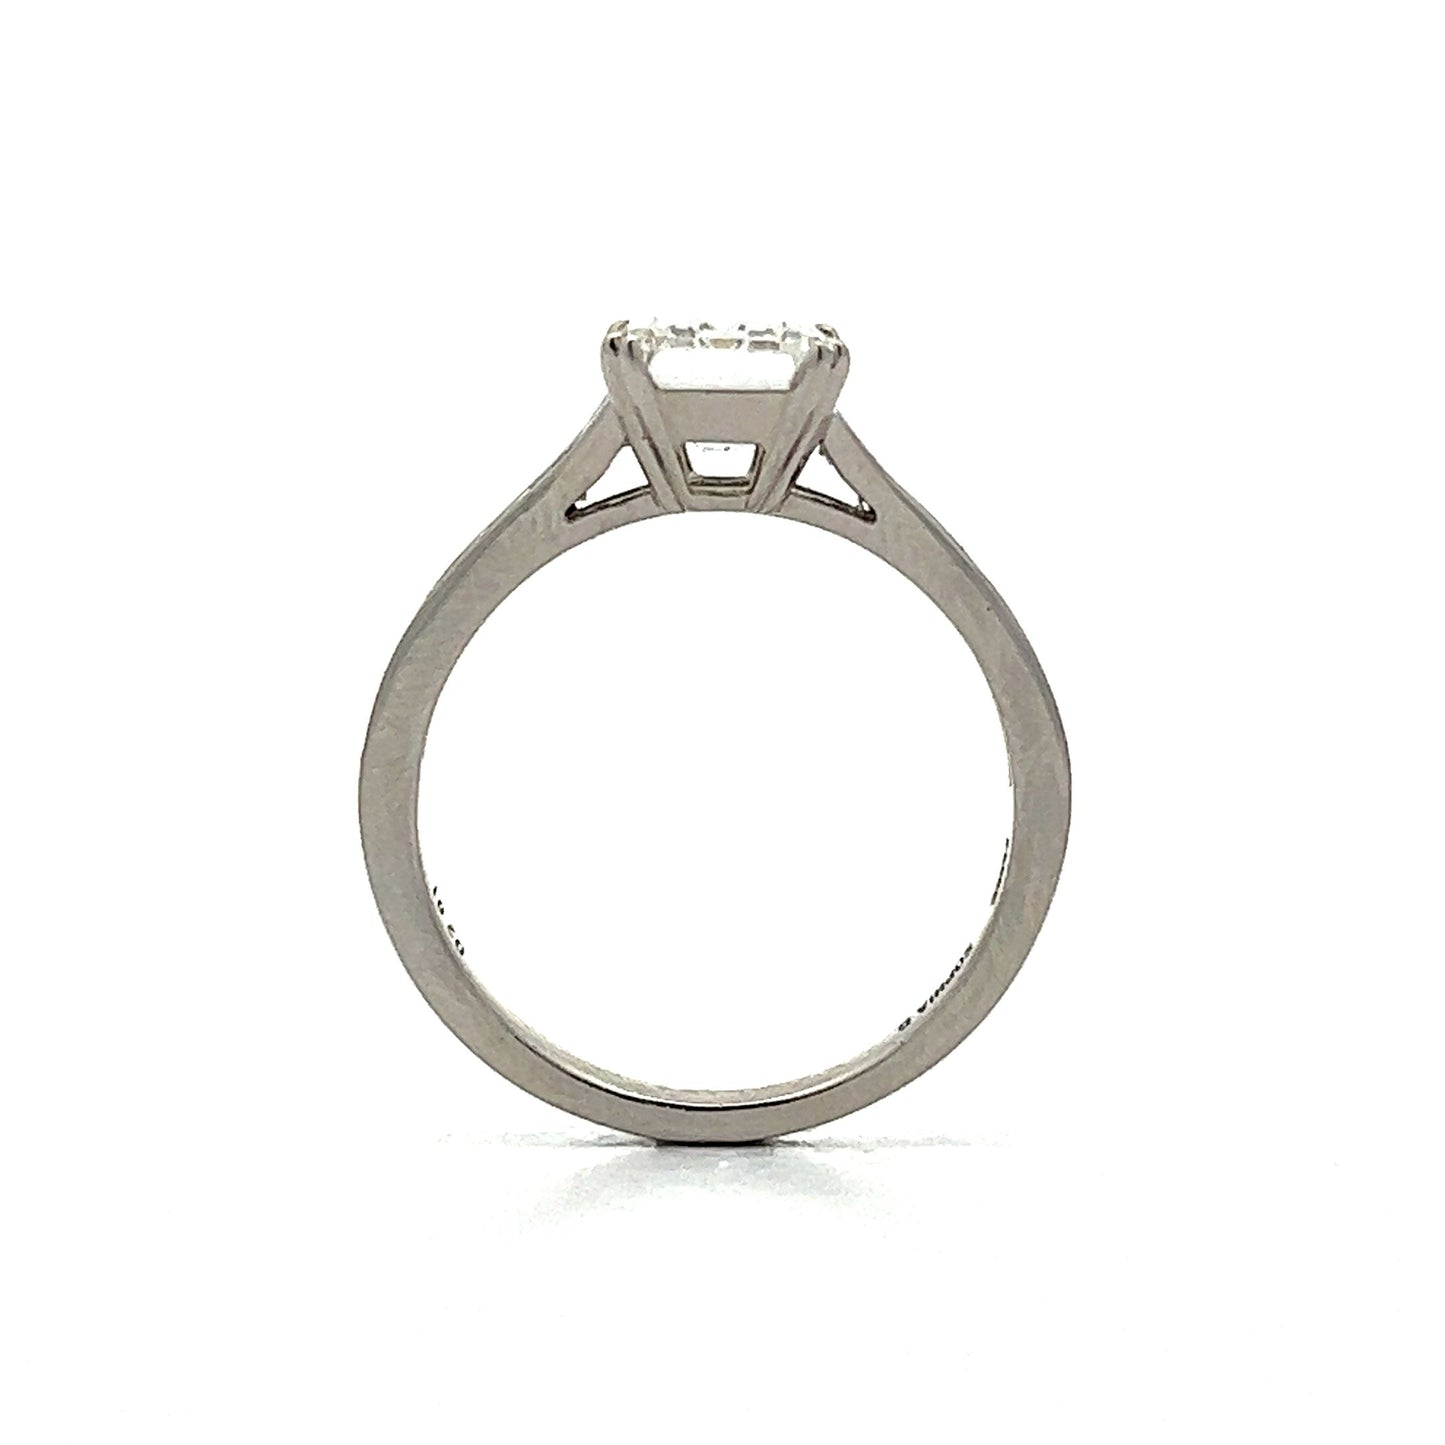 2 Carat Emerald Cut Diamond Engagement Ring in Platinum